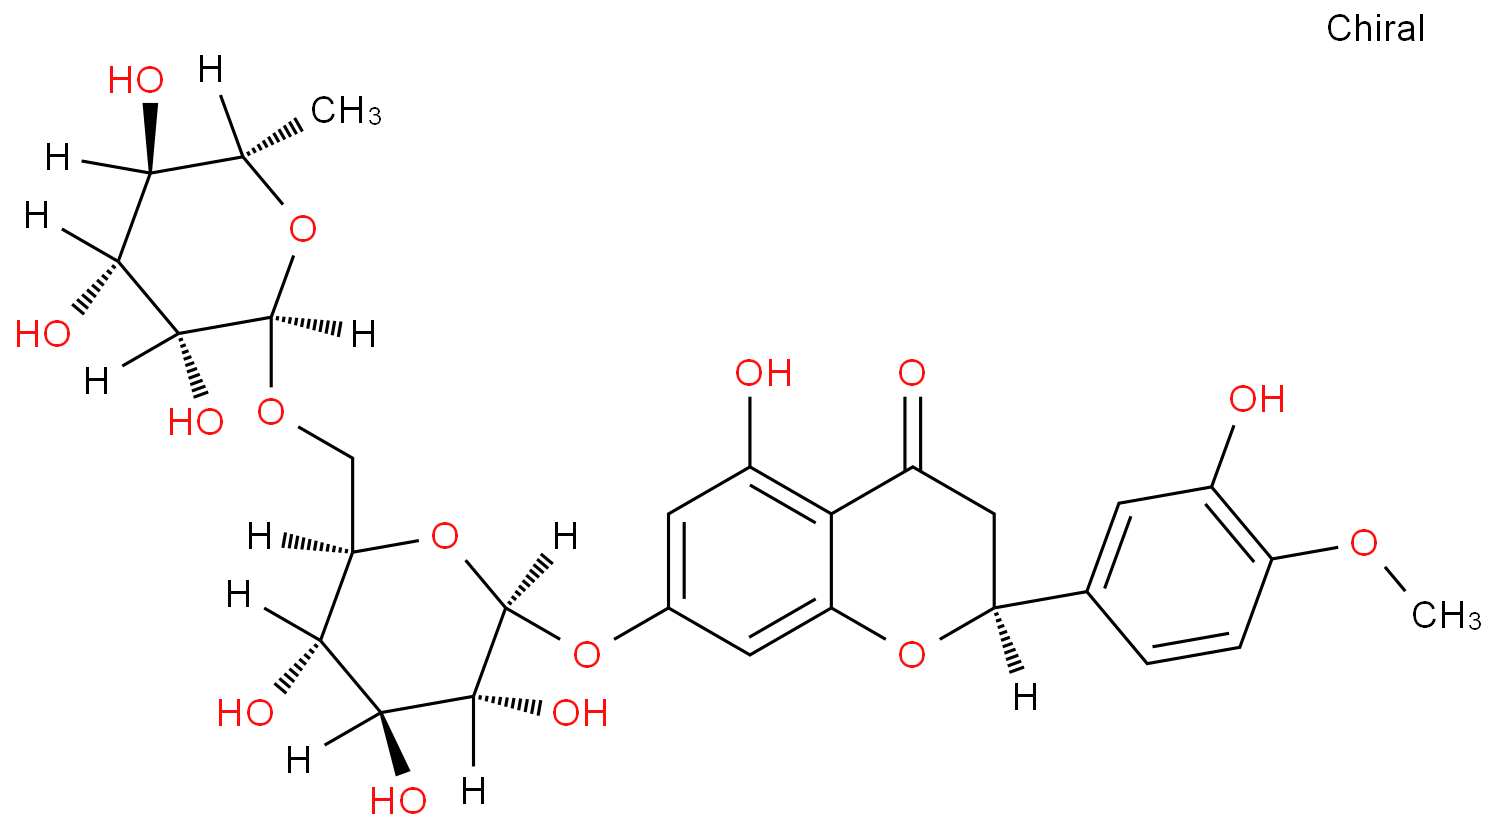 羧基和氨基脱水缩合形成的化学键